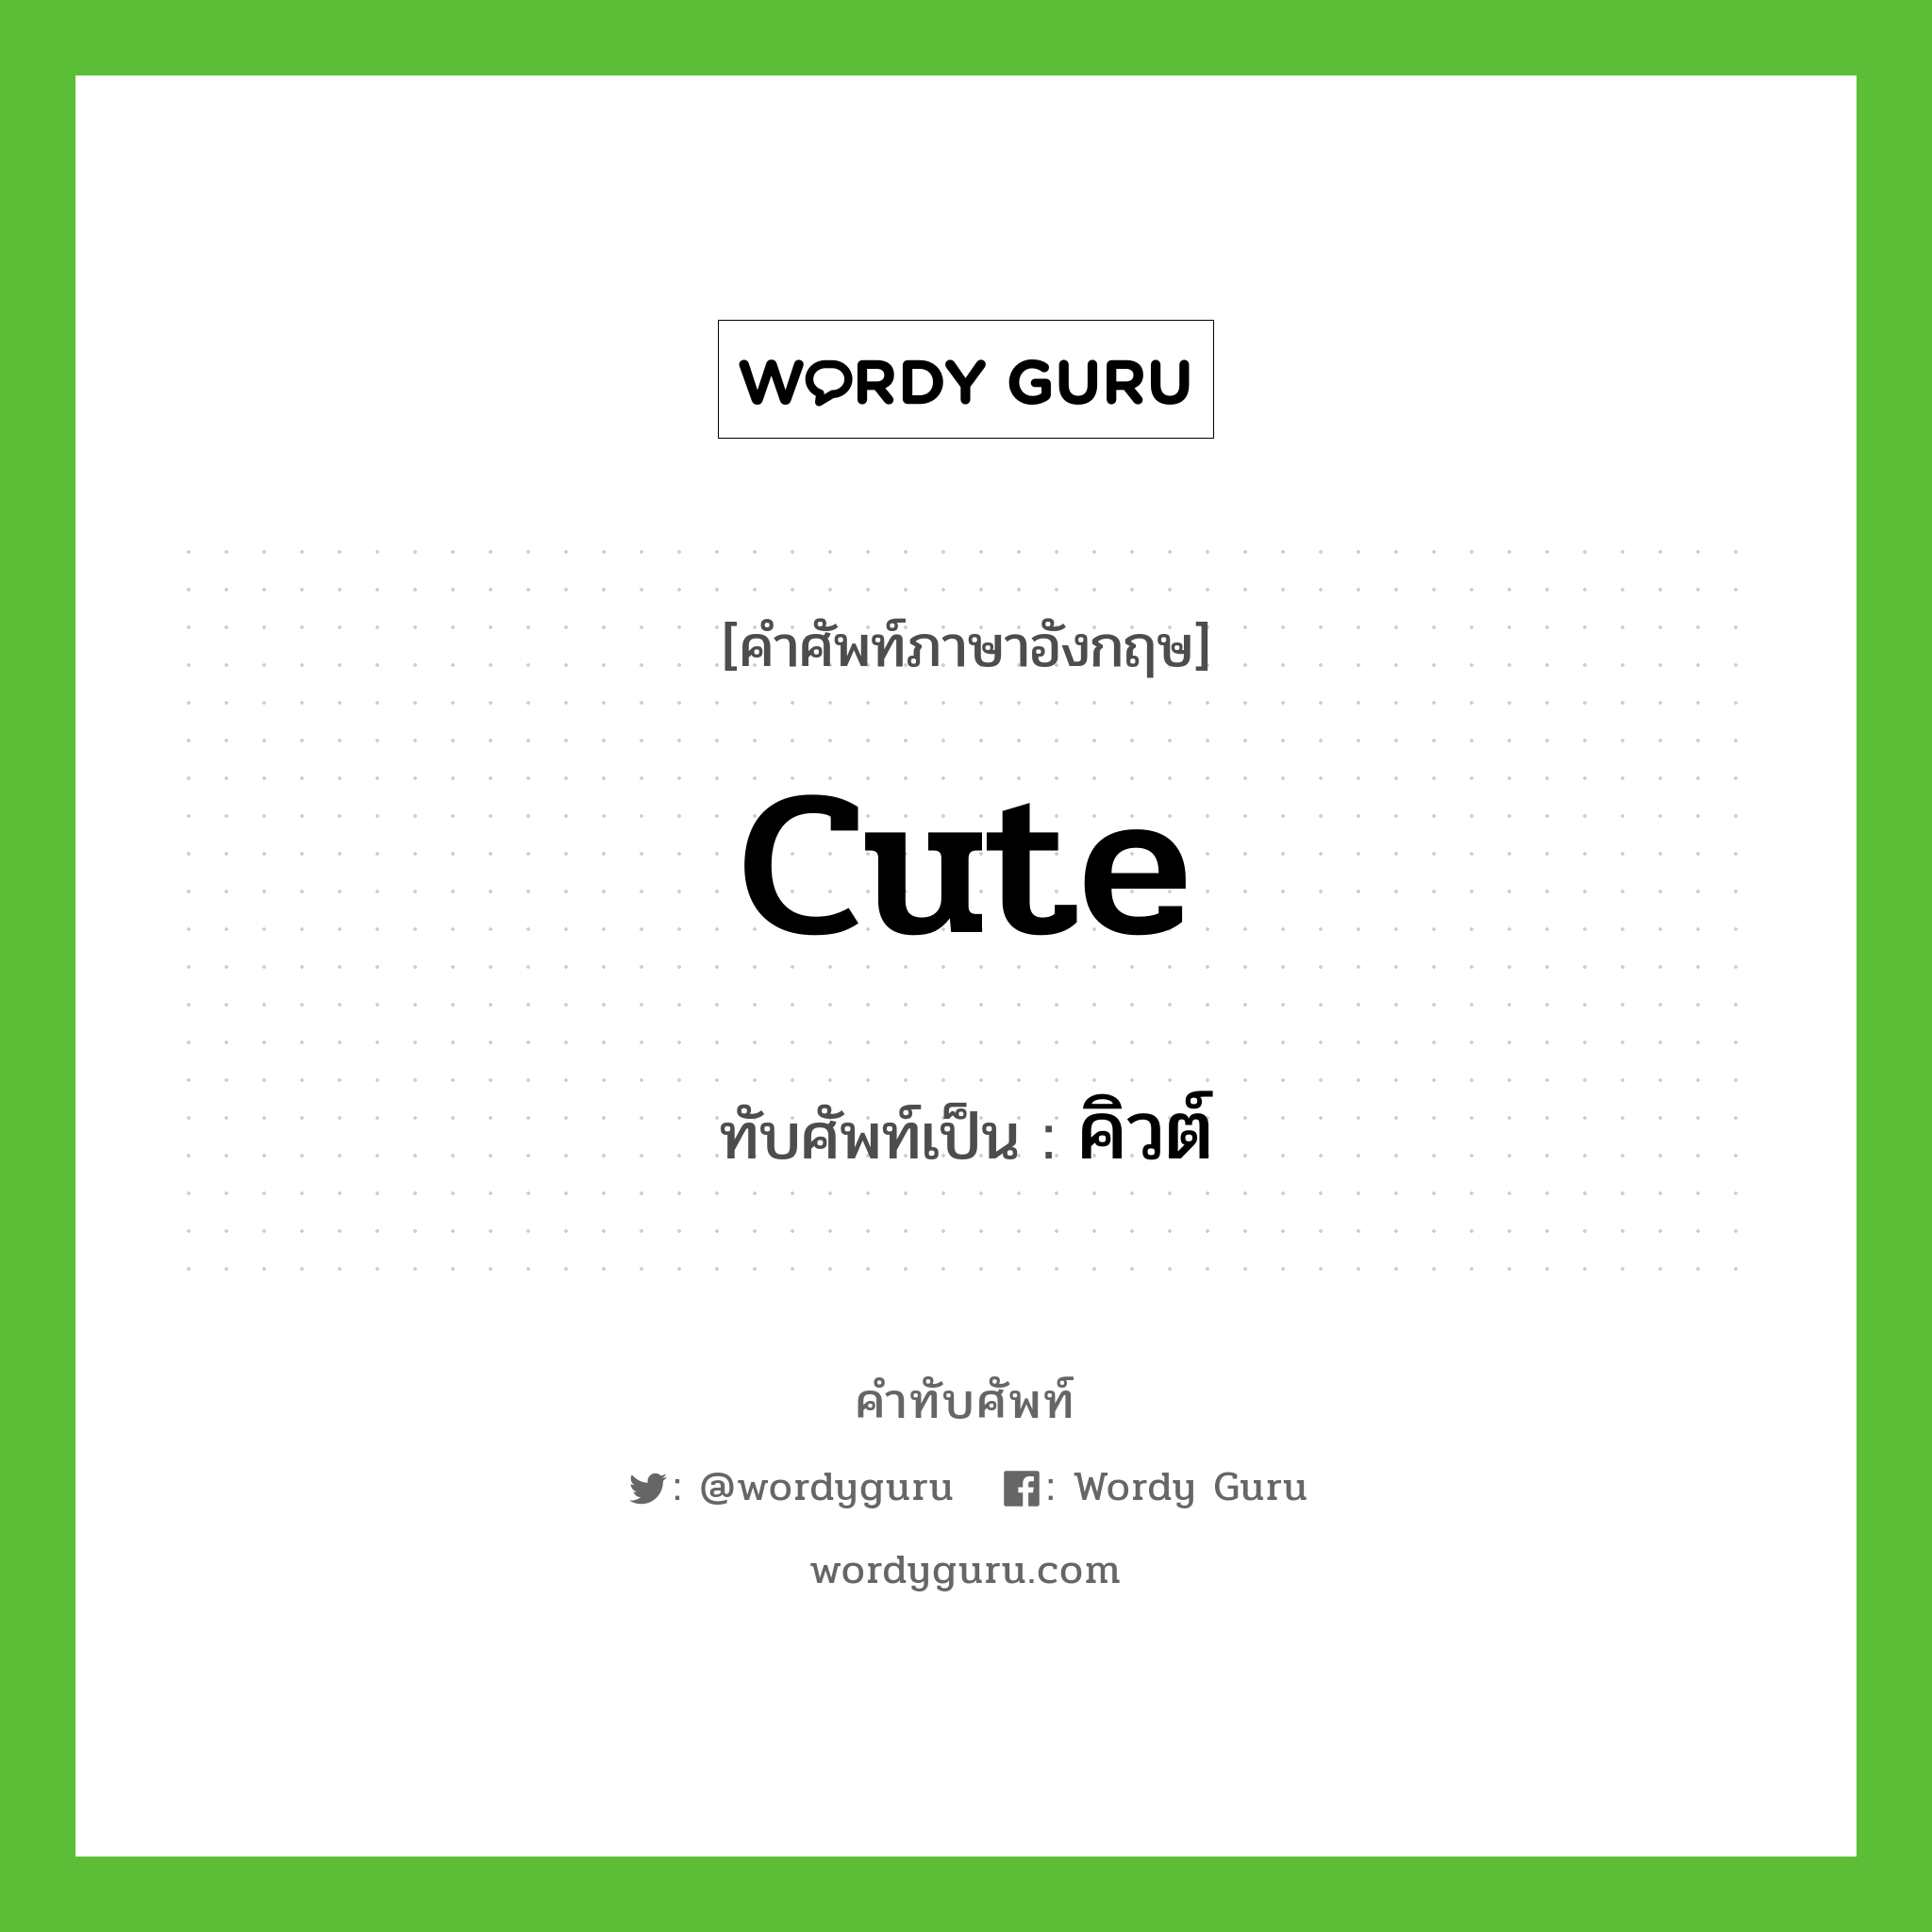 Cute เขียนเป็นคำไทยว่าอะไร?, คำศัพท์ภาษาอังกฤษ Cute ทับศัพท์เป็น คิวต์